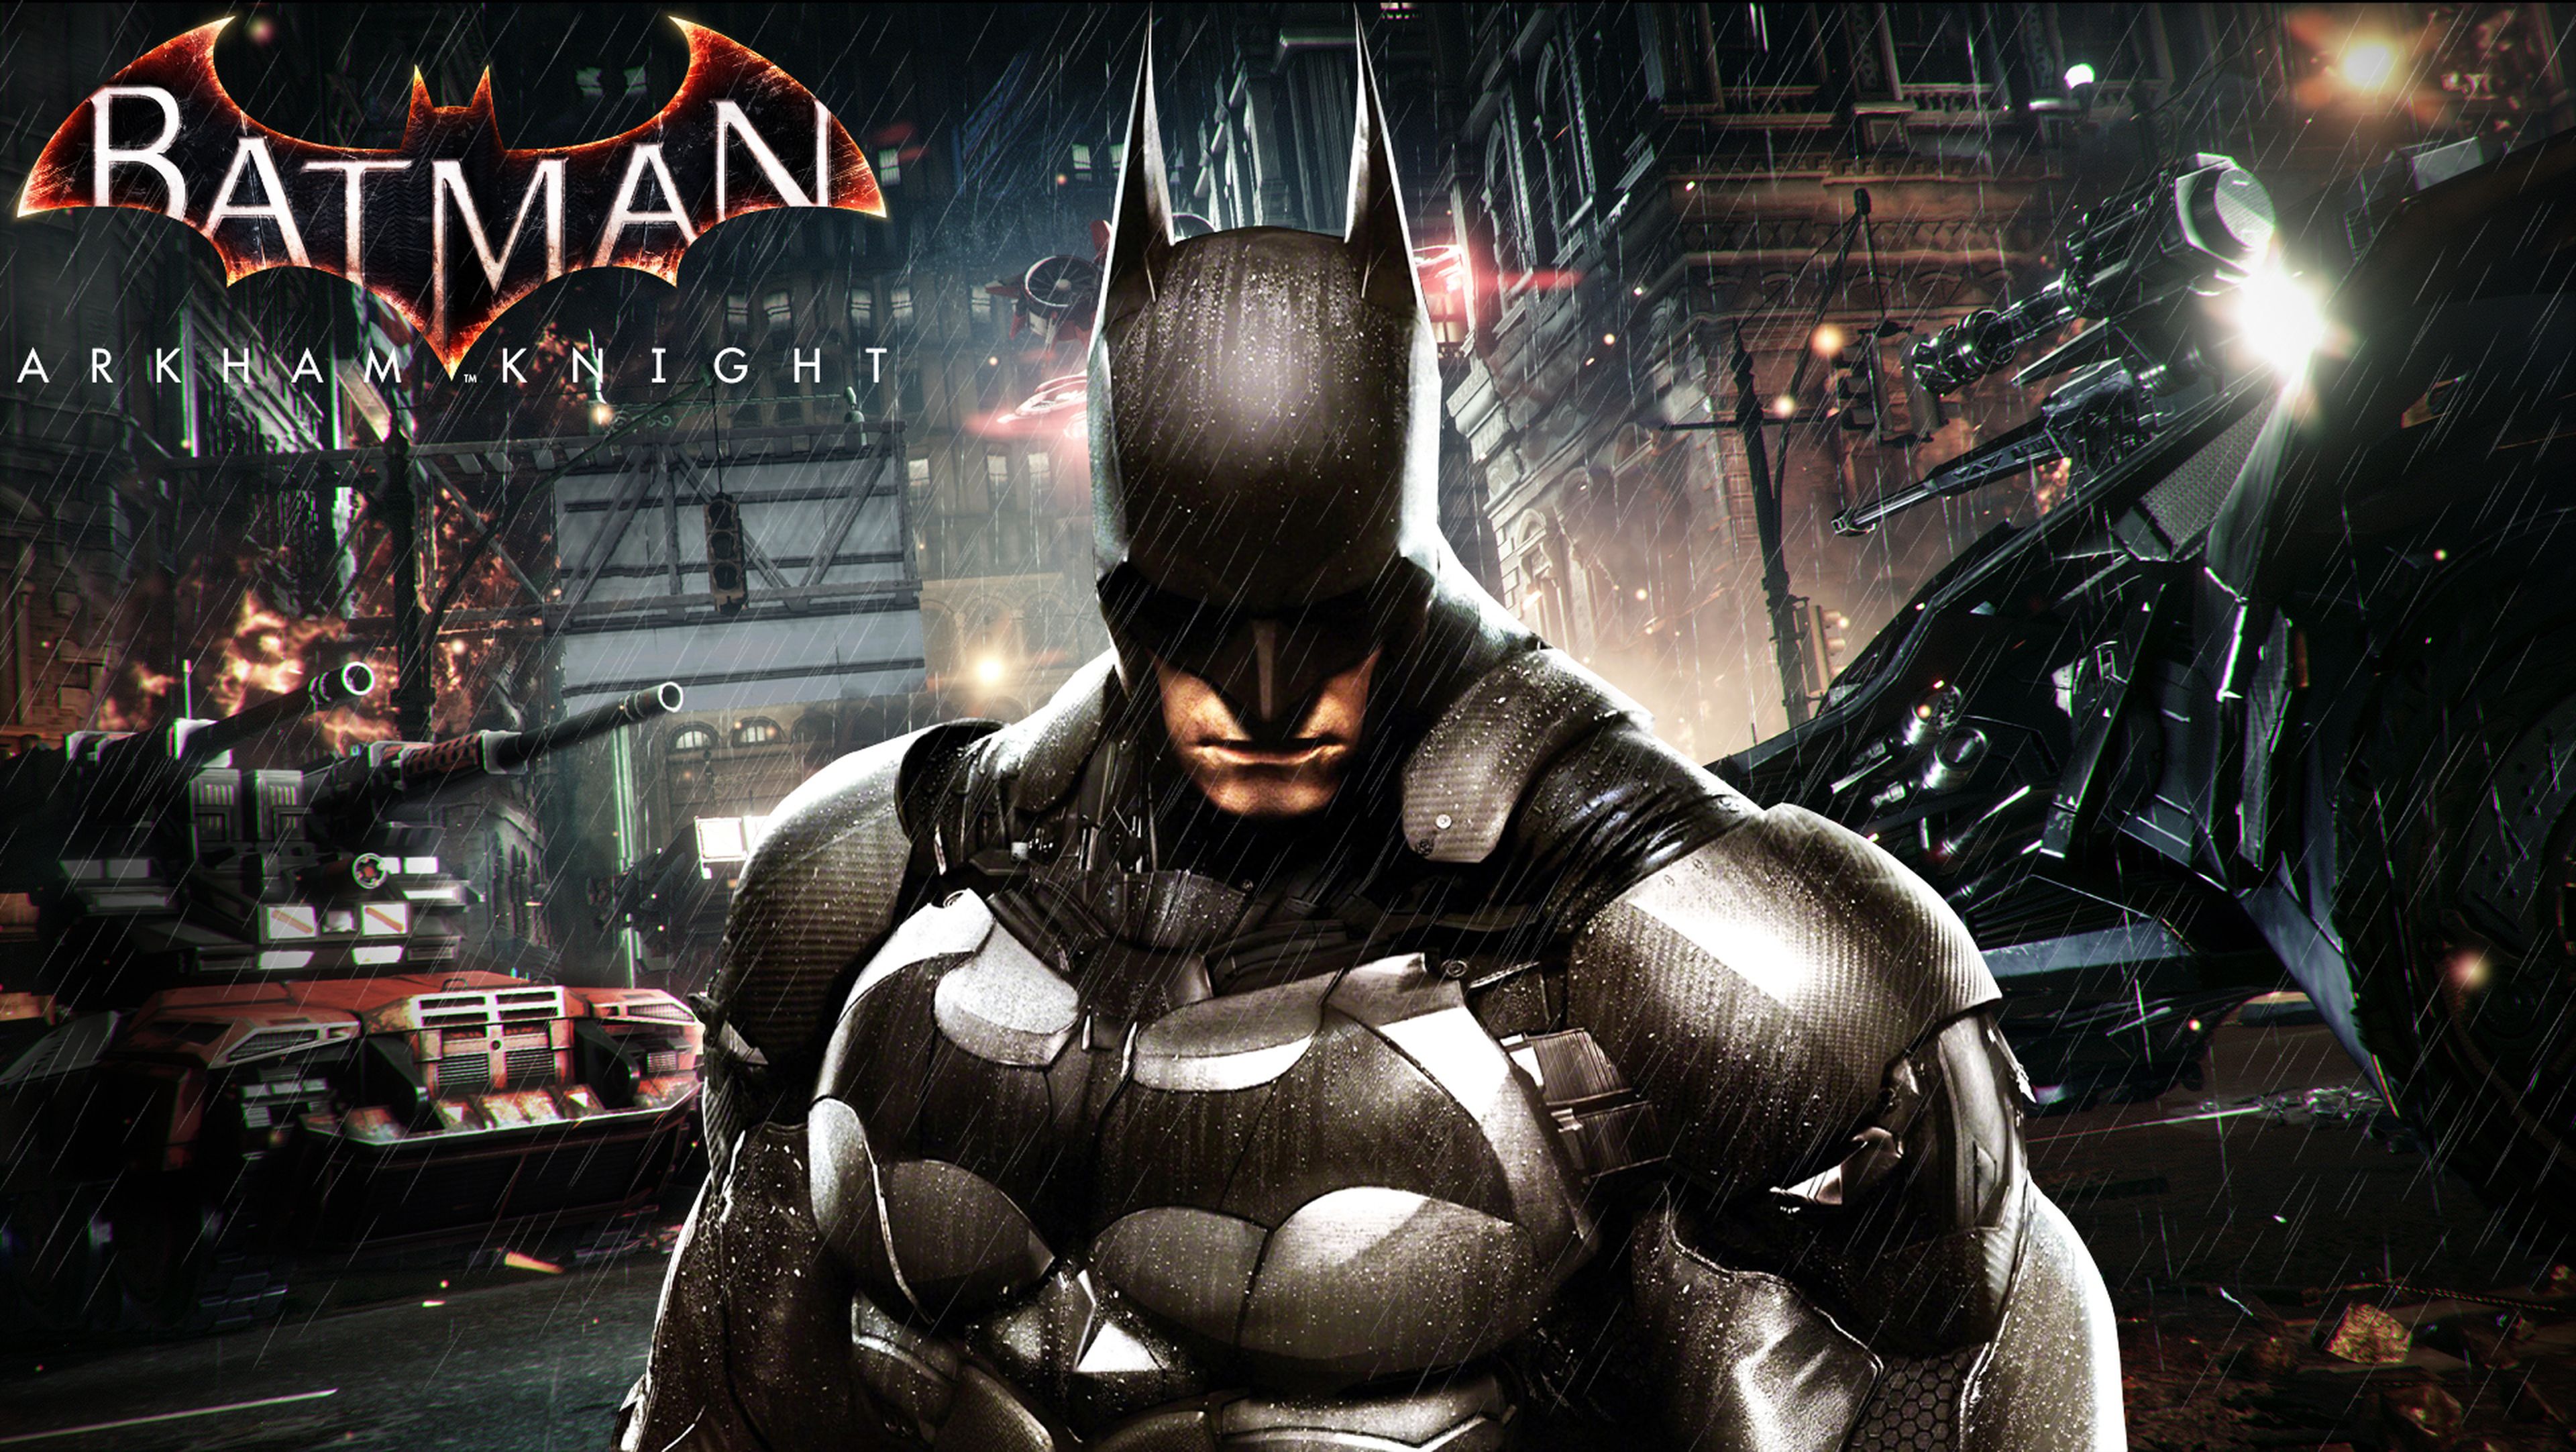 Los mejores fondos de pantalla de videojuegos para Android: Batman Arkham Knight